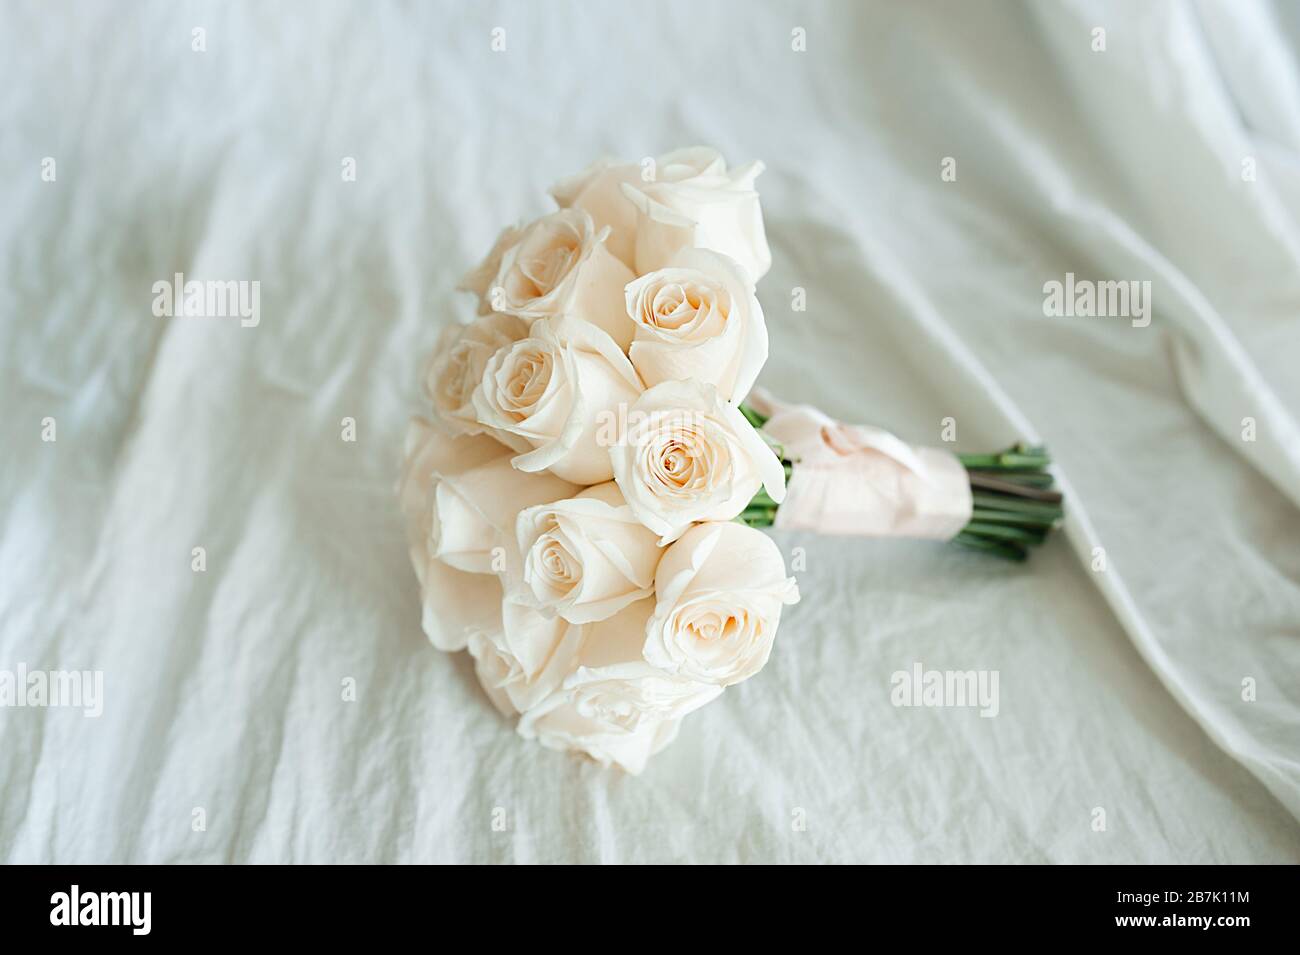 mazzo di nozze di rose bianche fresche identiche su un tessuto di cotone sbriciolato di colore lattiginoso. La vista dall'alto. Spazio per testo, layout per inv Foto Stock